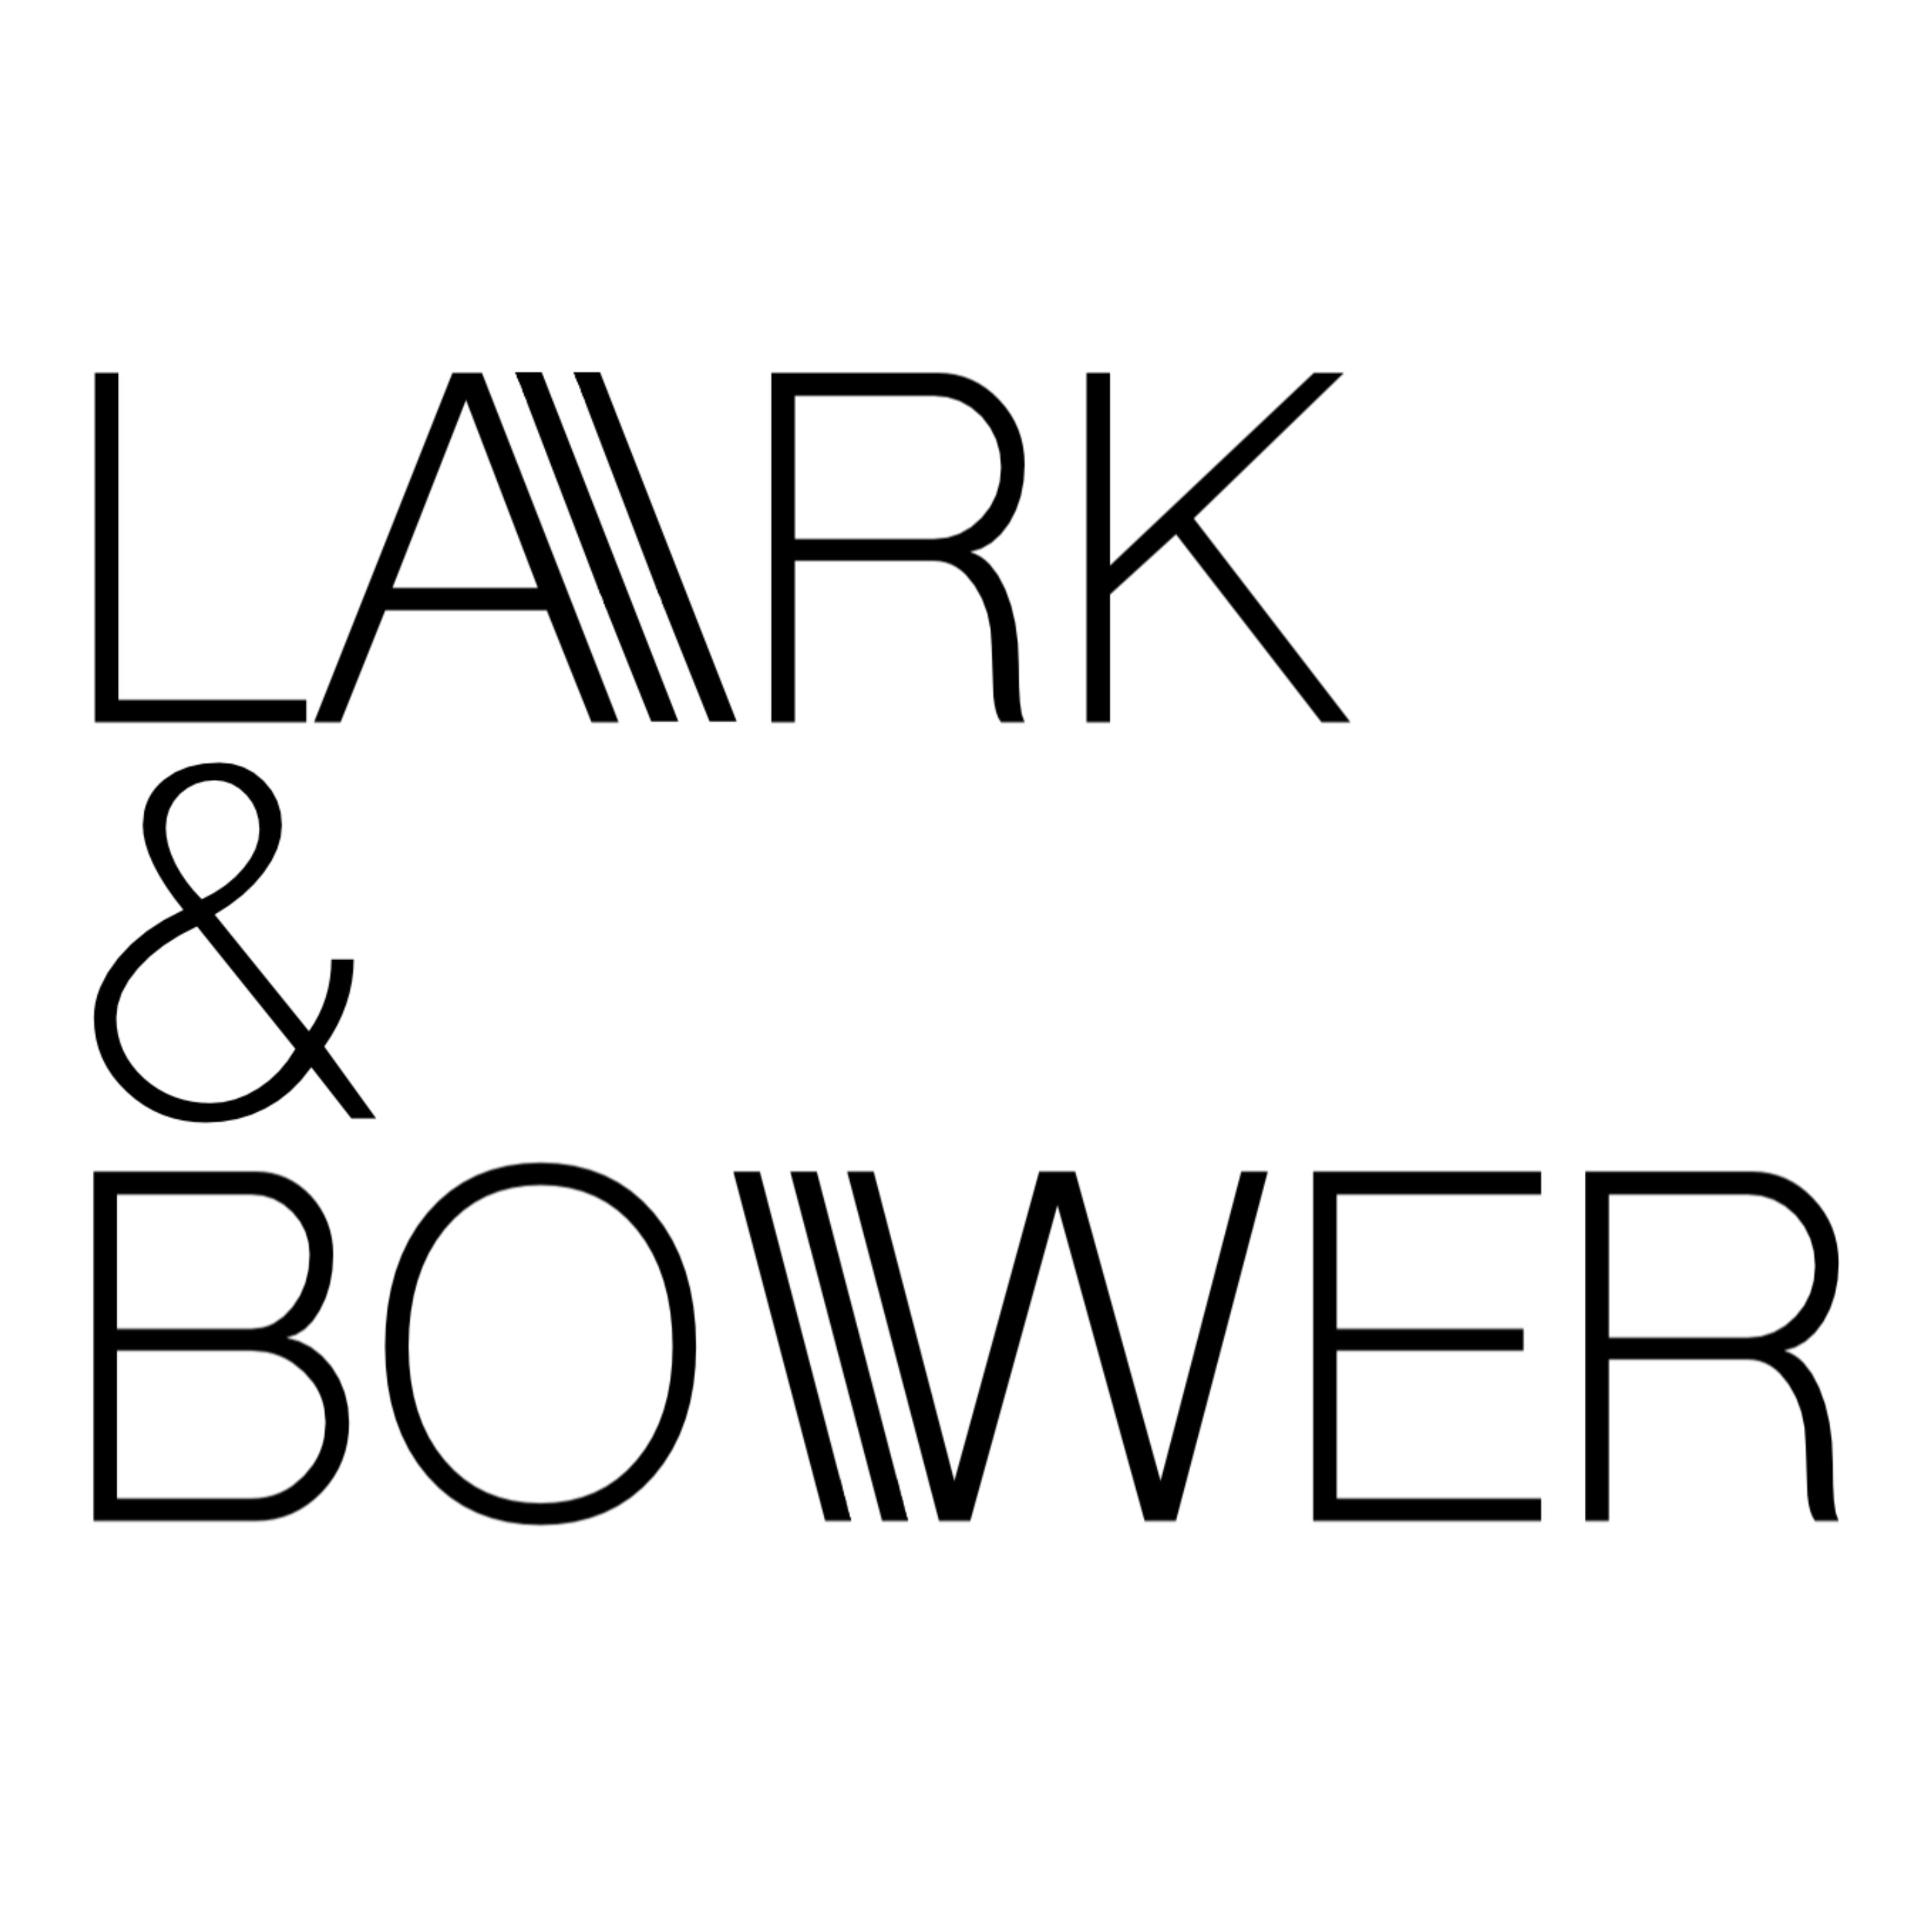 Lark & Bower logo